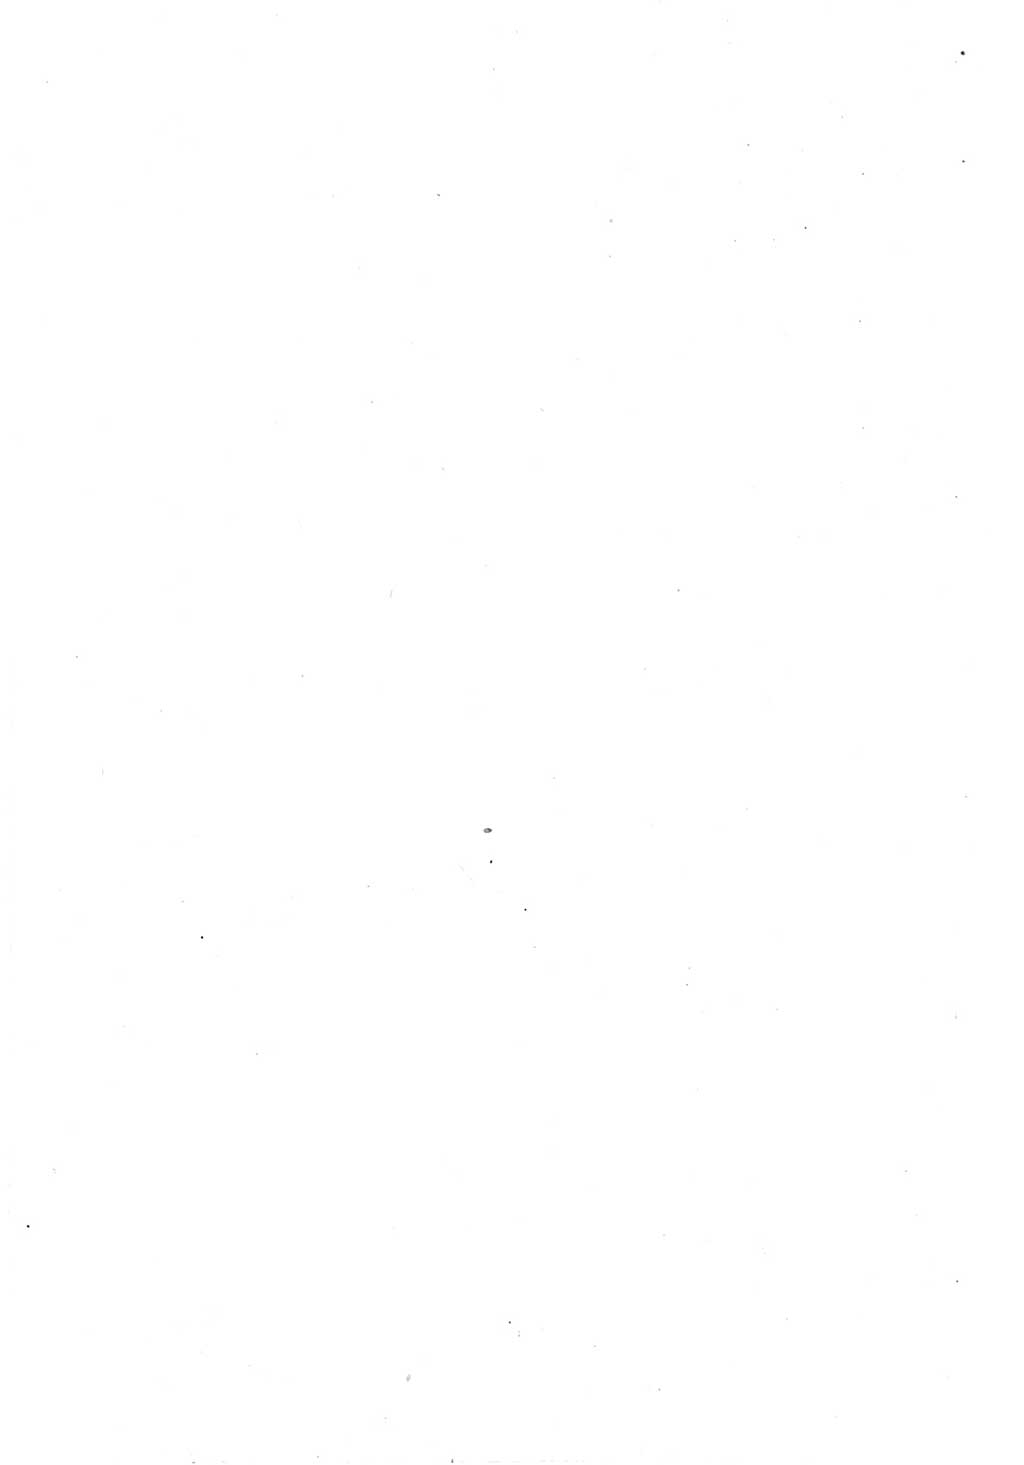 Strafgesetzbuch (StGB) und andere Strafgesetze [Deutsche Demokratische Republik (DDR)] 1951, Seite 16 (StGB Strafges. DDR 1951, S. 16)